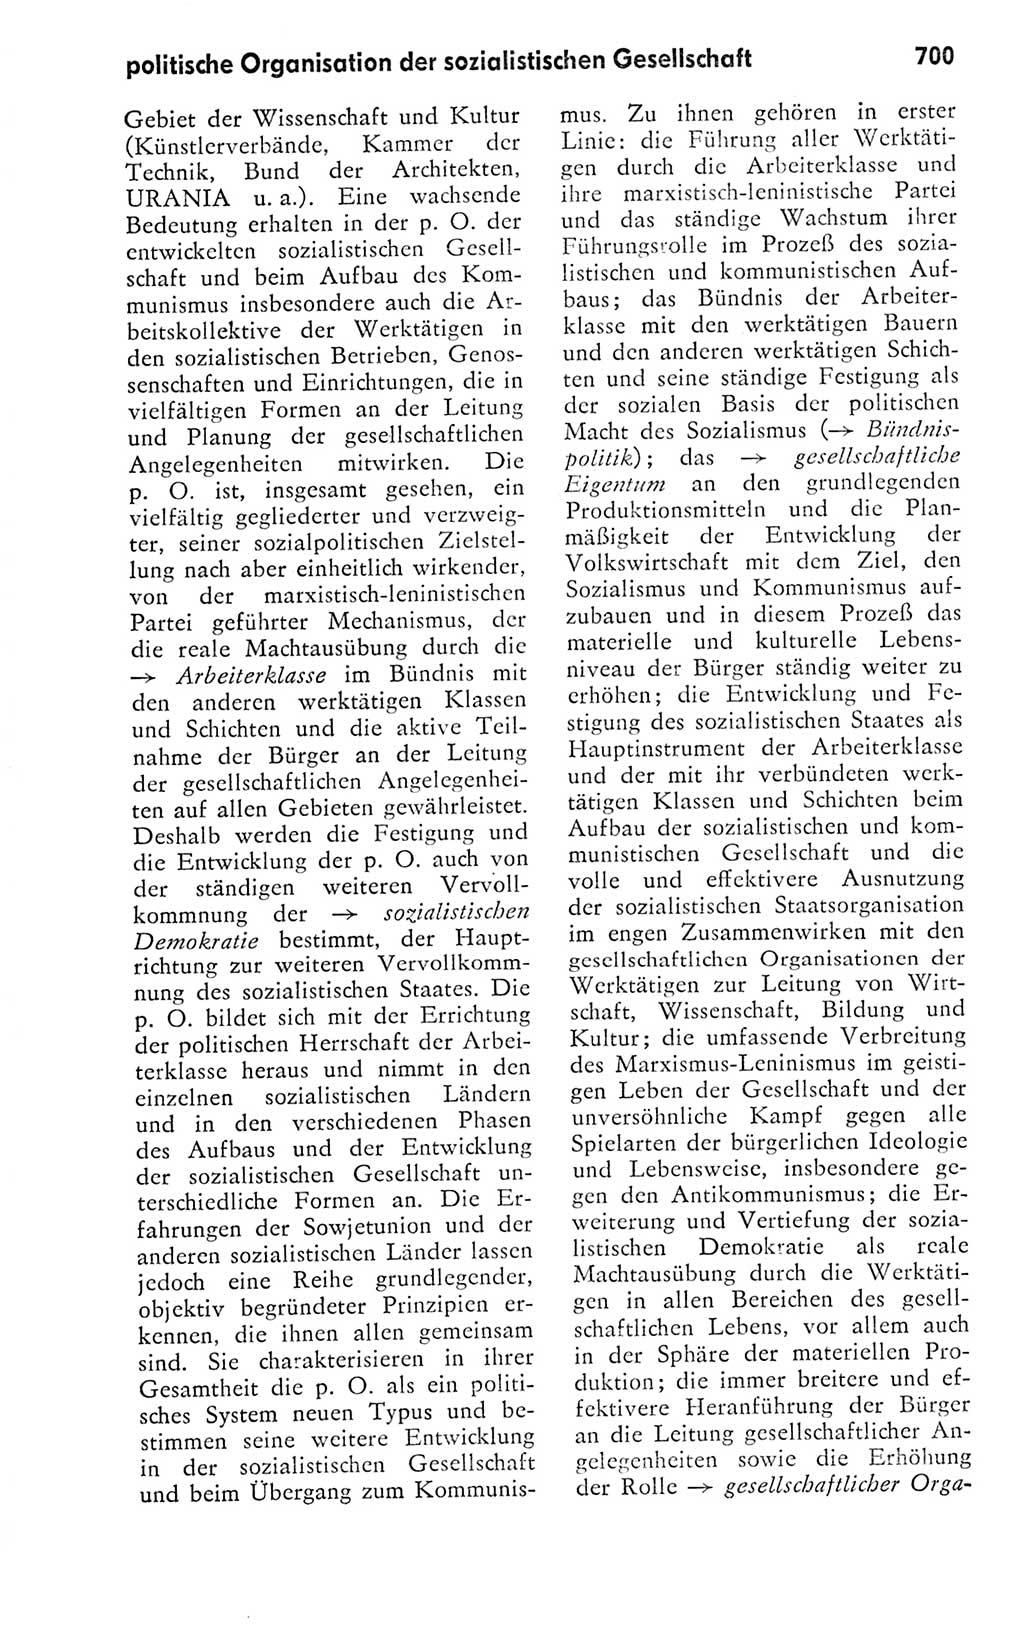 Kleines politisches Wörterbuch [Deutsche Demokratische Republik (DDR)] 1978, Seite 700 (Kl. pol. Wb. DDR 1978, S. 700)